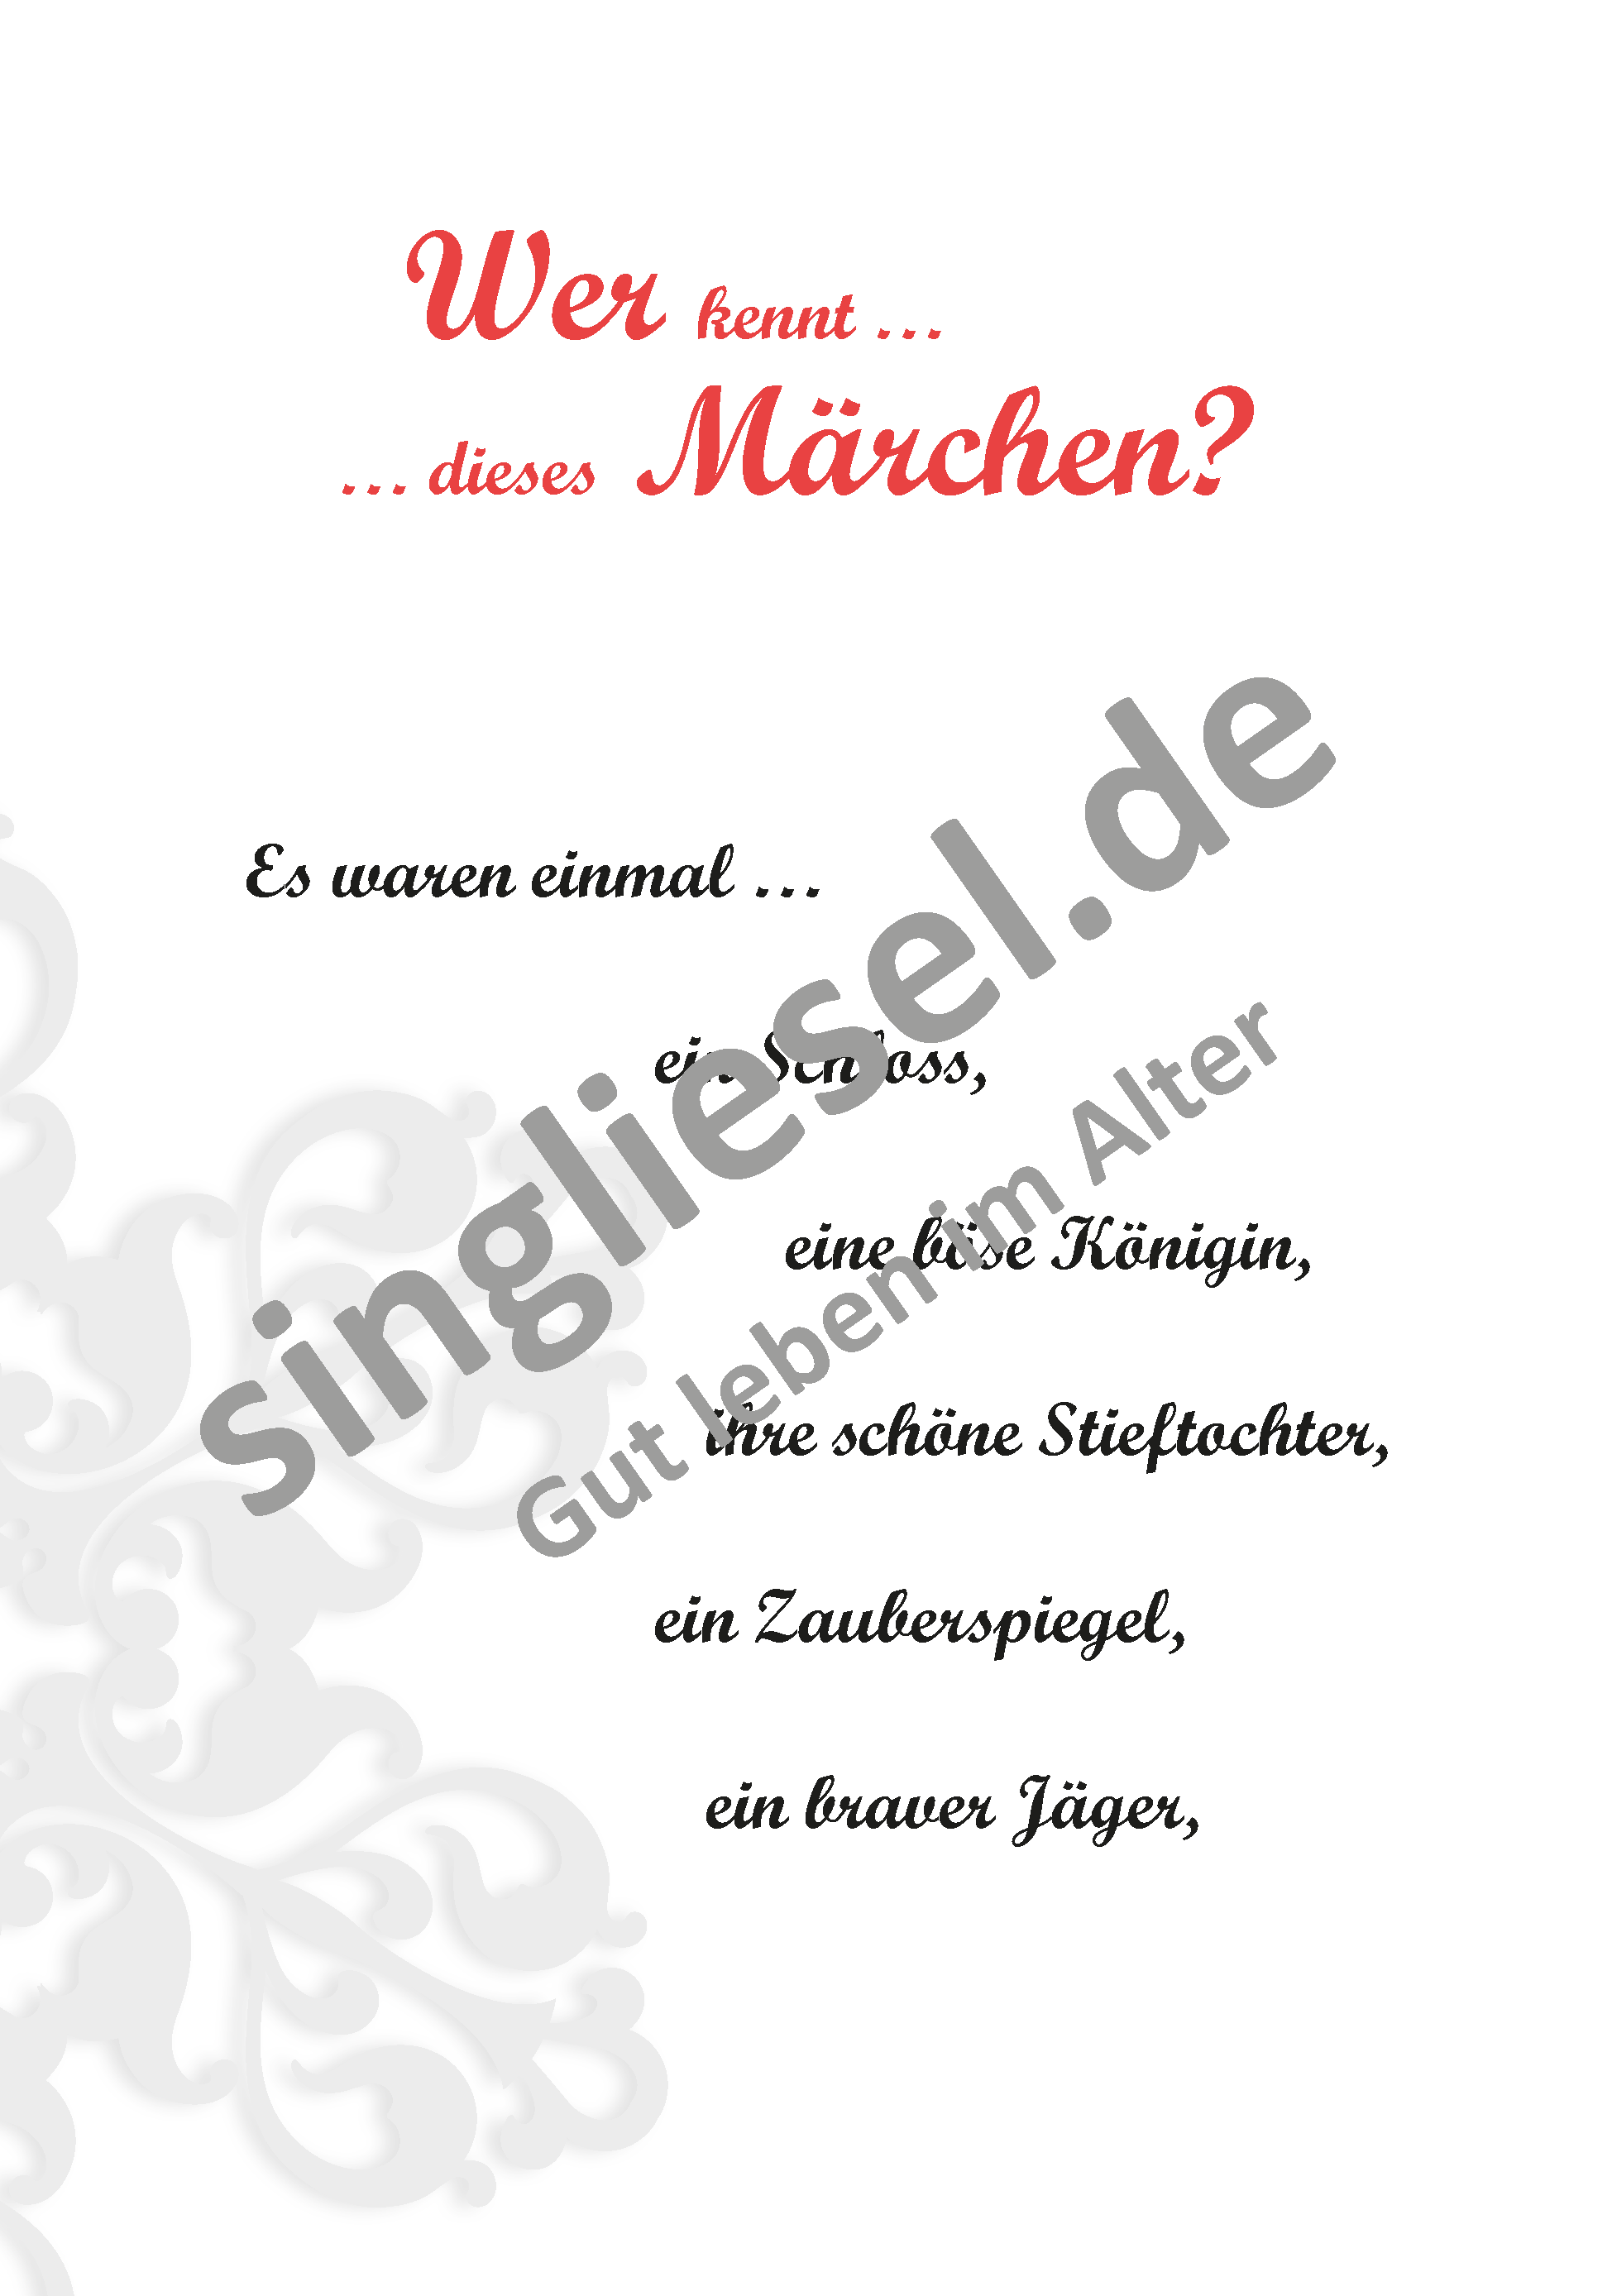 Märchen für Senioren. "Schneewittchen“ u.v.m. (PDF) Märchen-Quiz Seite 1